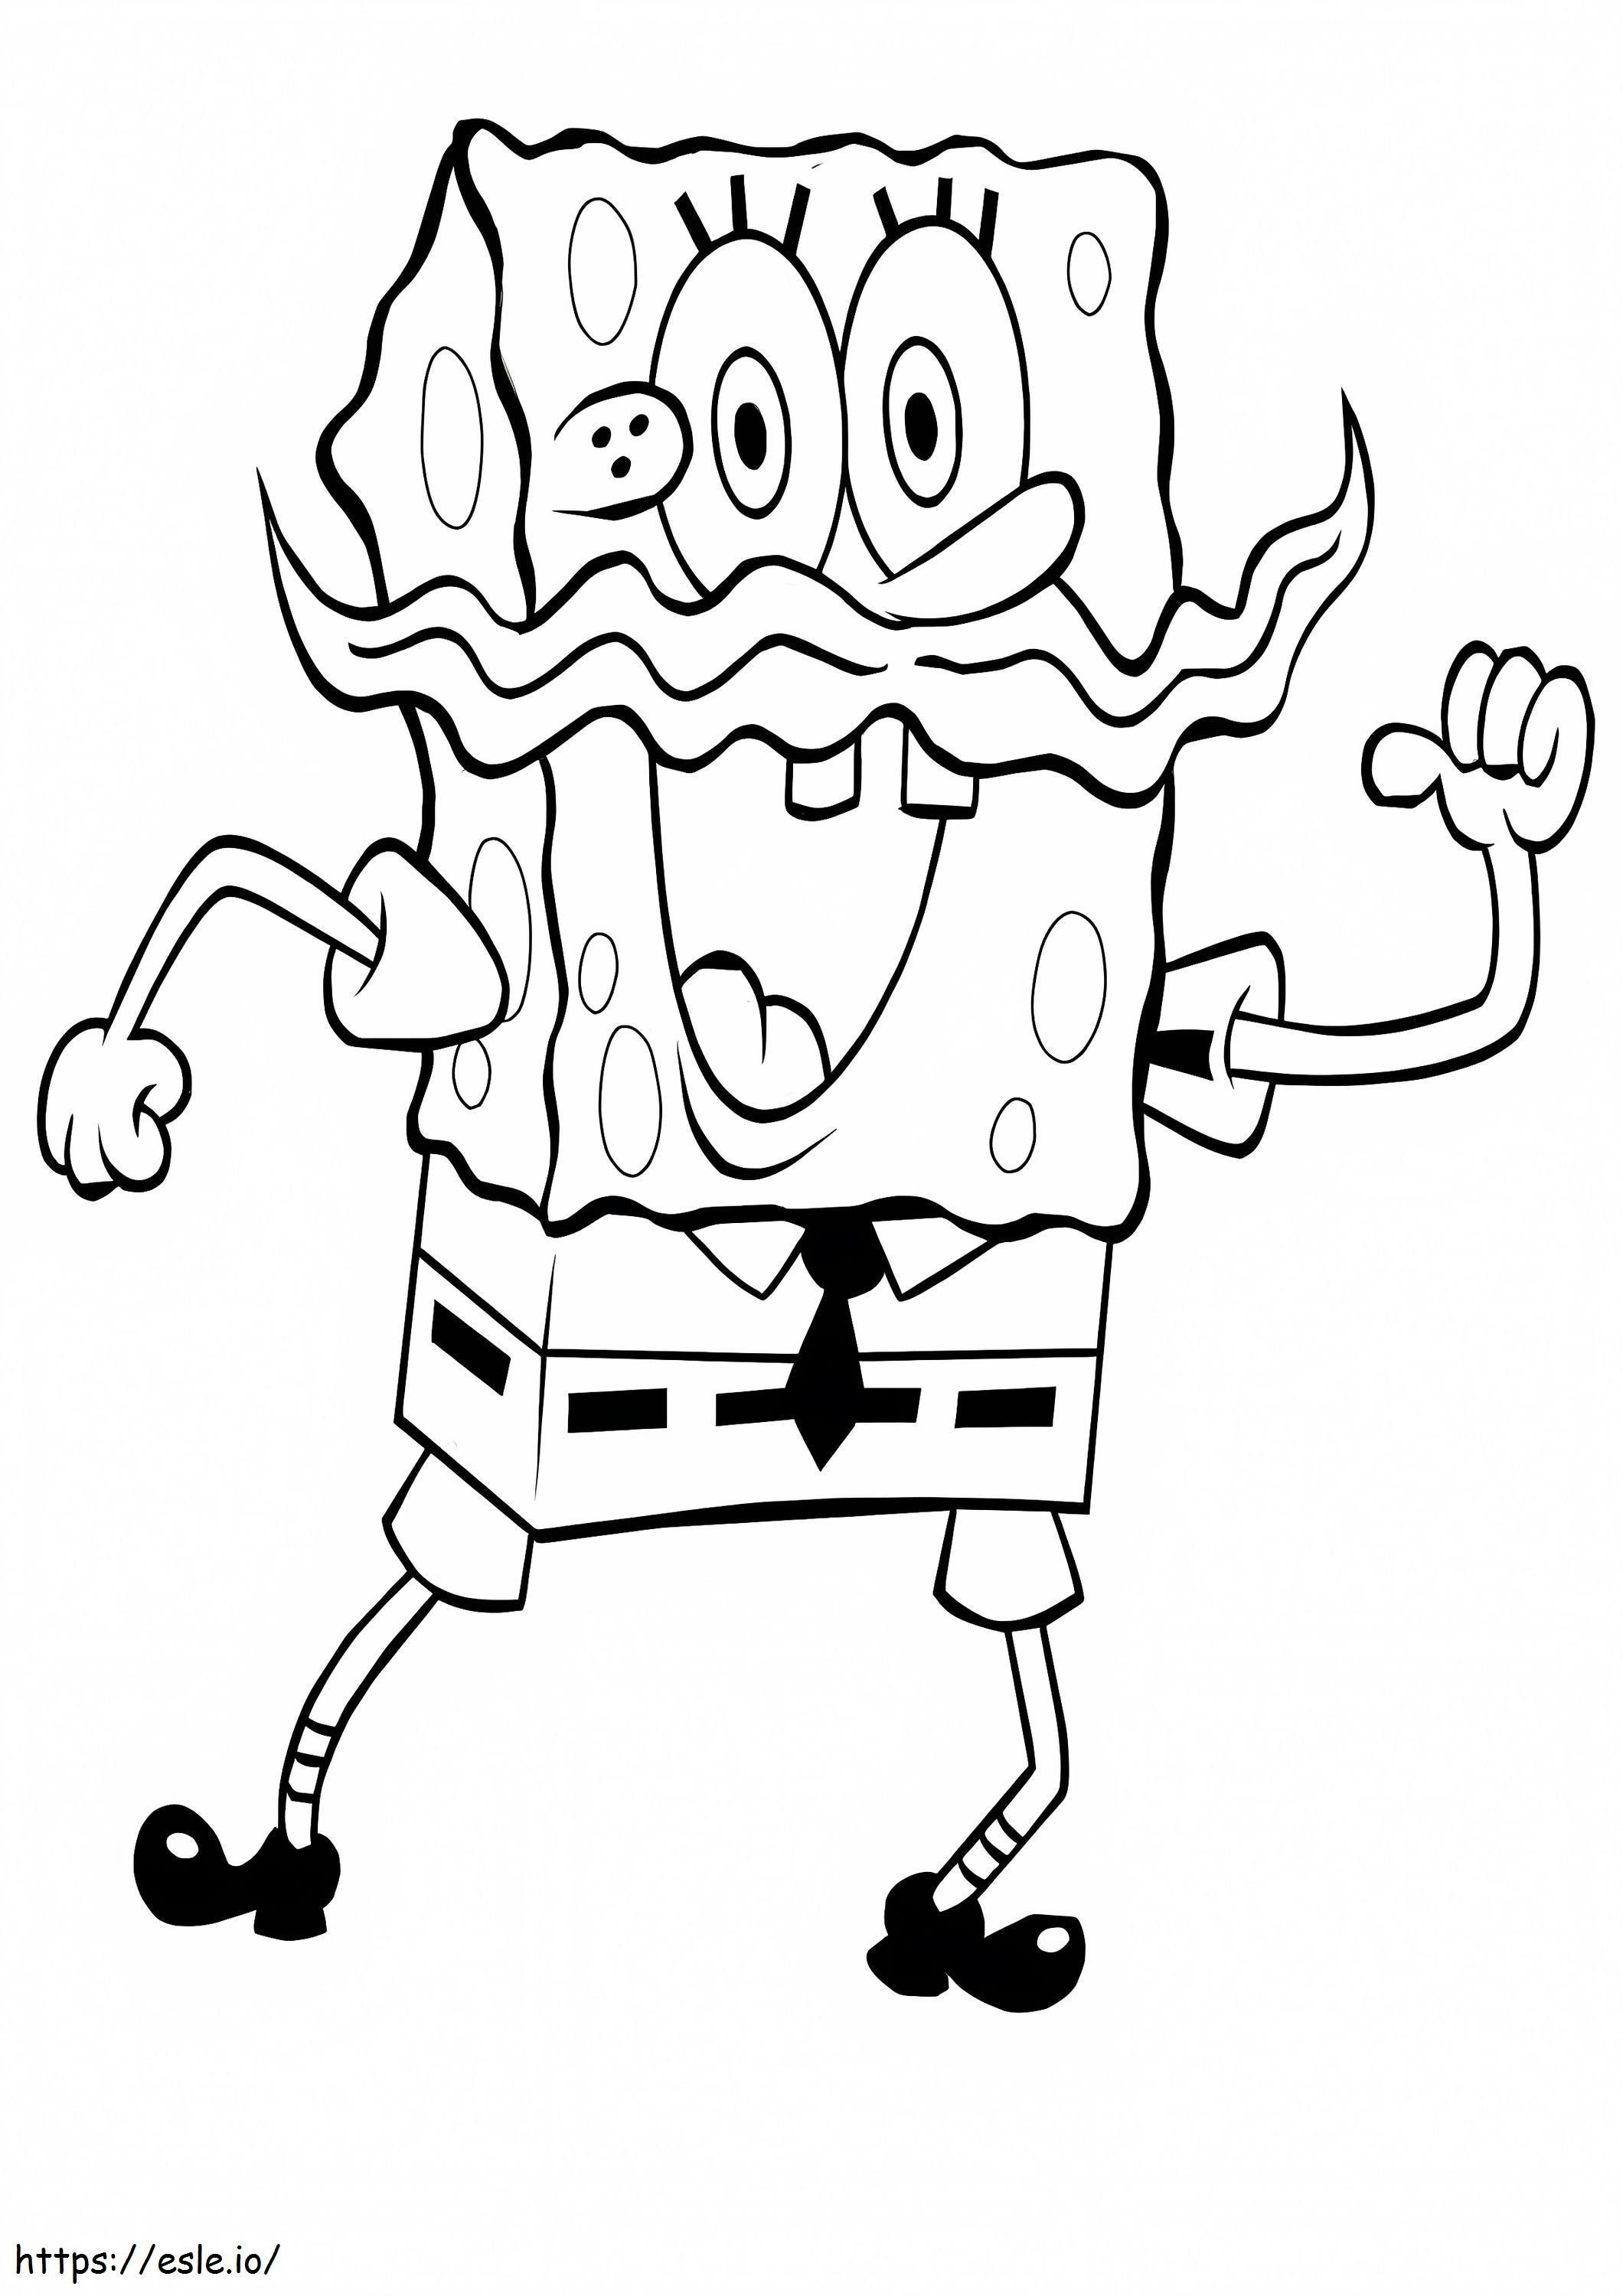 Spongebob Met Snor kleurplaat kleurplaat